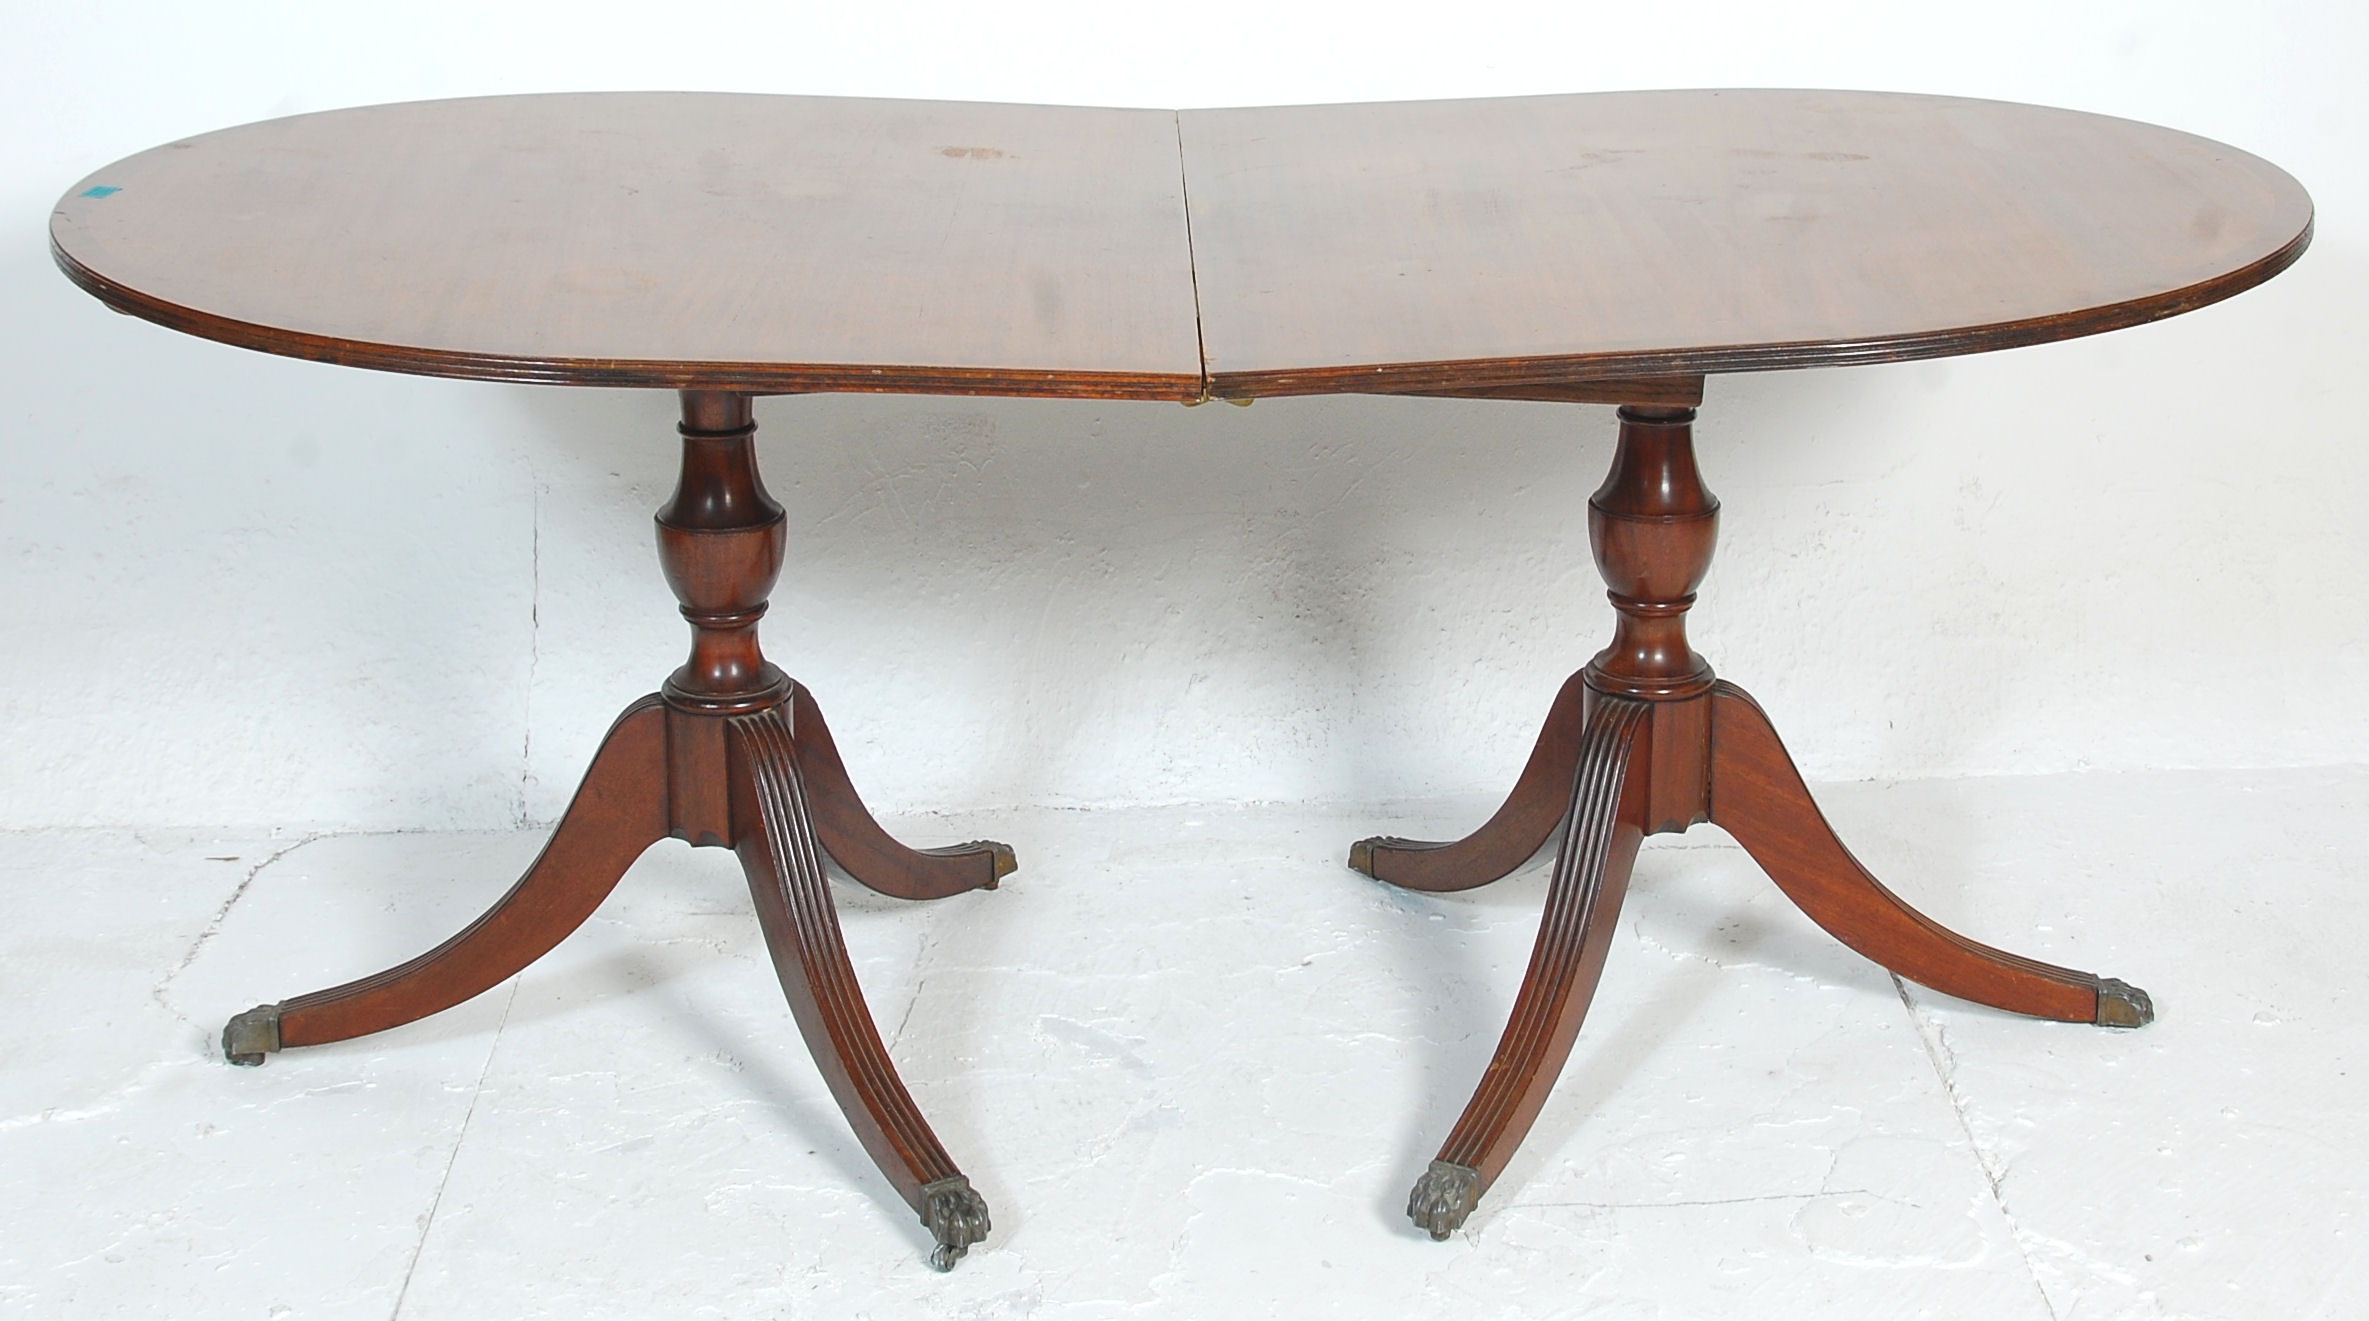 An antique mahogany folding breakfast table having